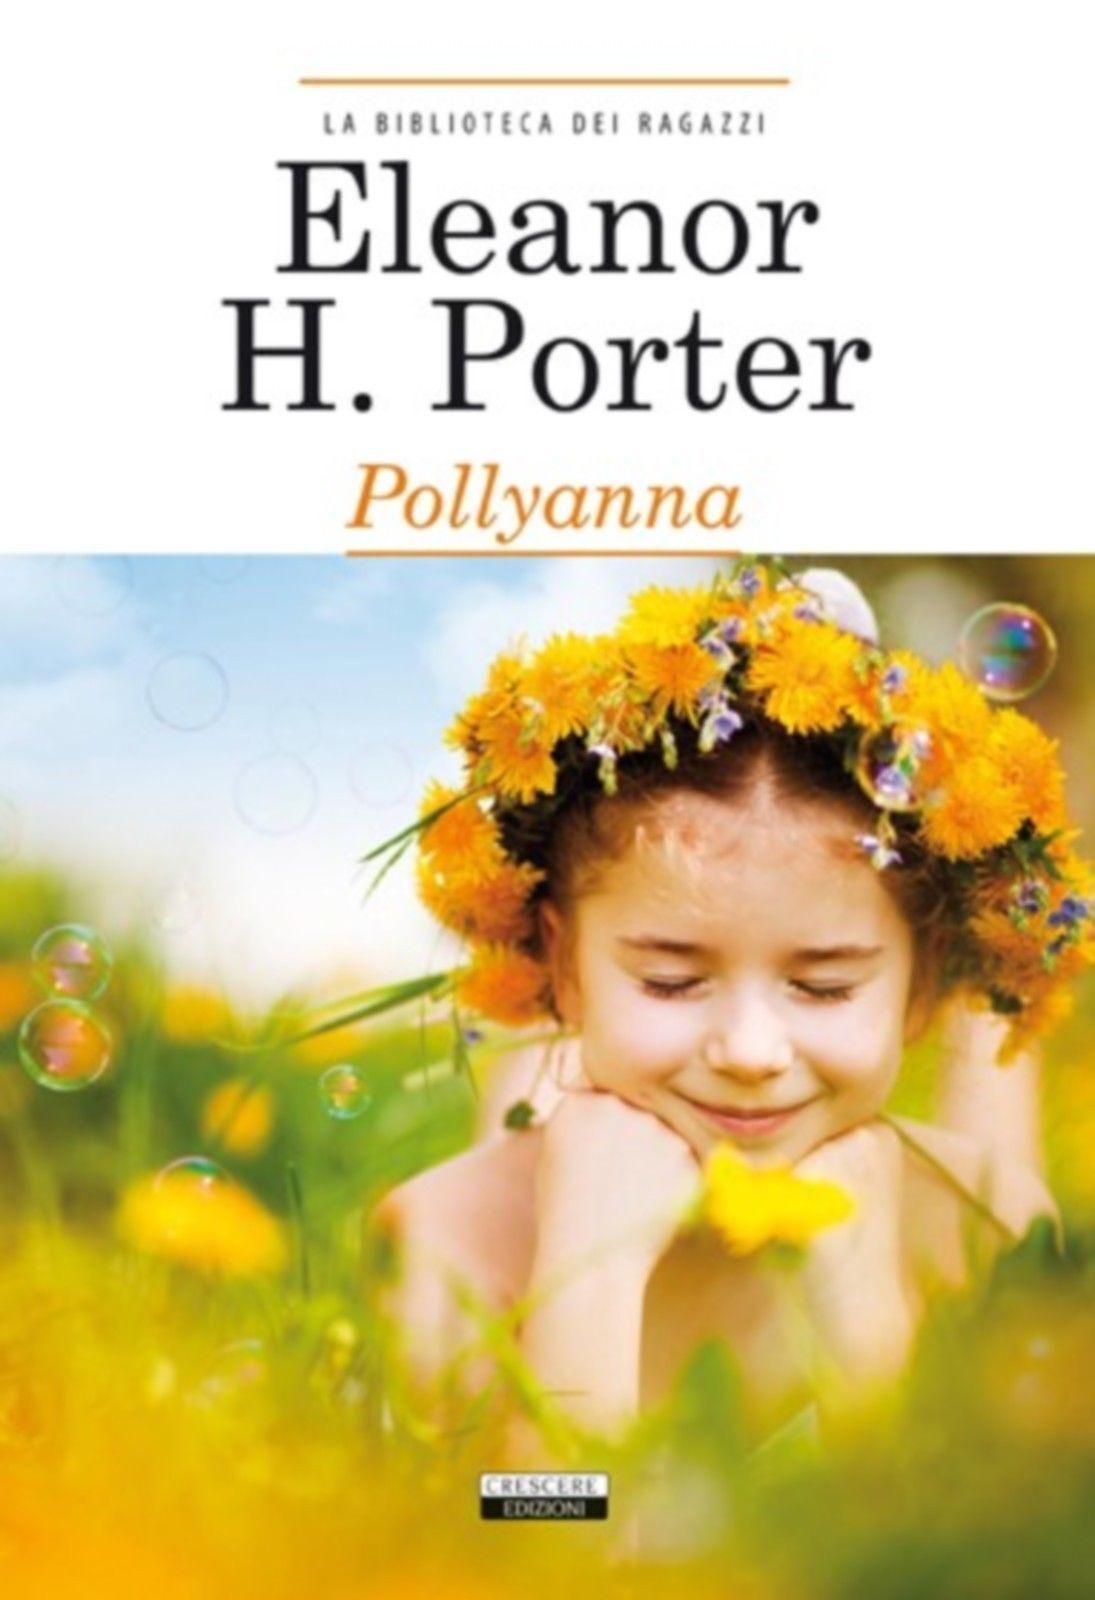 Pollyanna - Eleanor H. Porter - Crescere